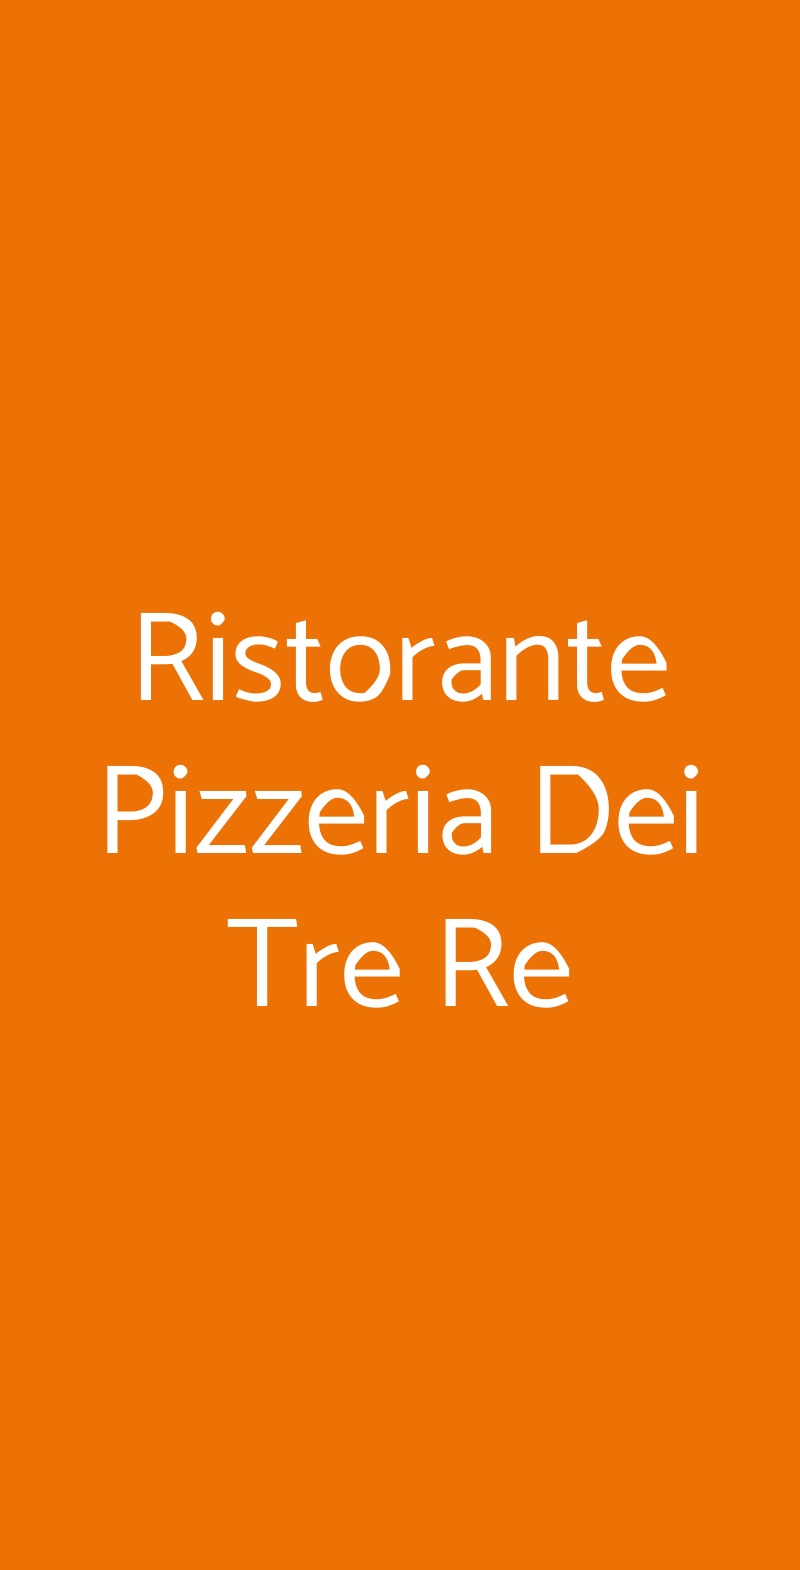 Ristorante Pizzeria Dei Tre Re Verderio menù 1 pagina